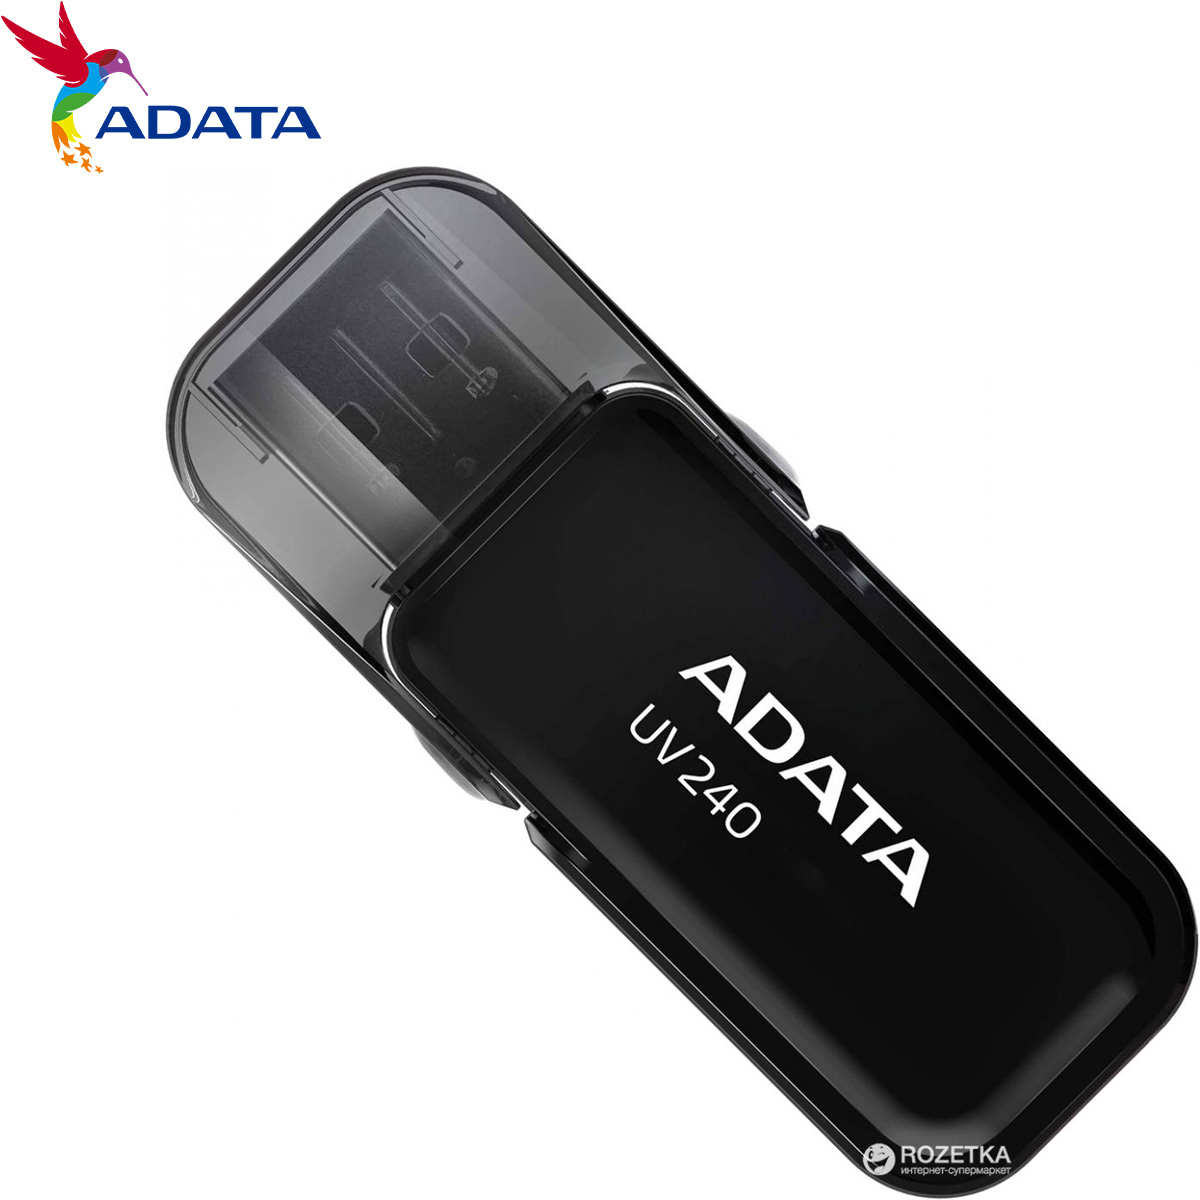 UV240 32GB BLACK RETAIL USB Flash Drive